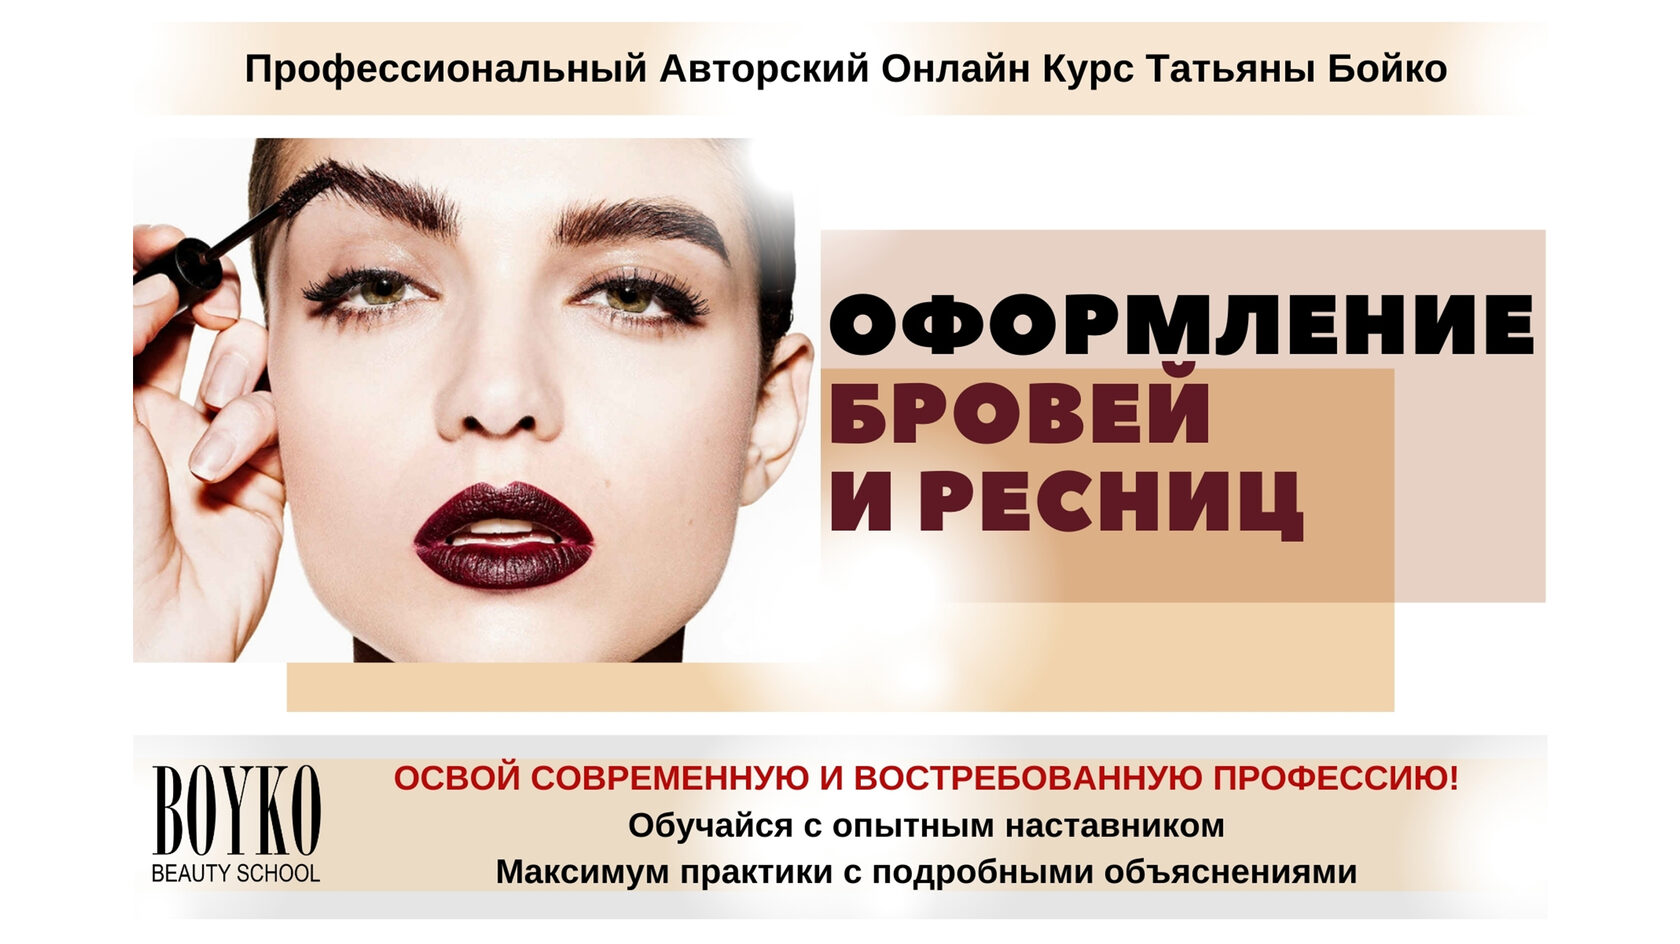 Как сделать макияж для видеочата в интернете, рассказала визажист Татьяна Бойко - «ФАКТЫ»